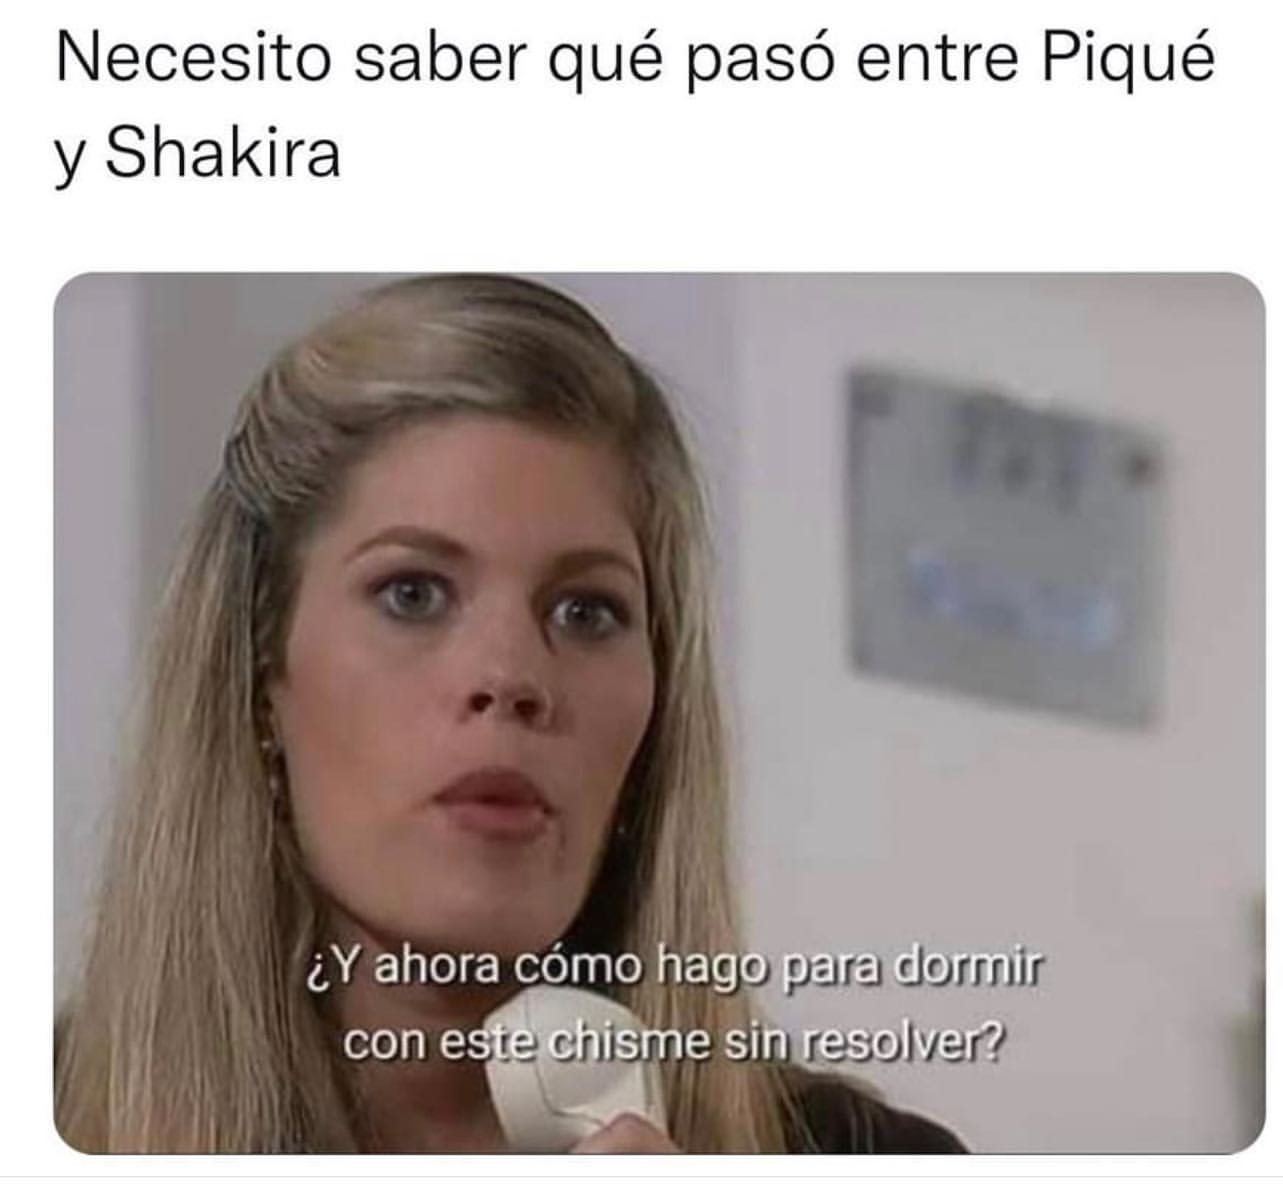 Necesito saber qué pasó entre Piqué y Shakira. ¿Y ahora cómo hago para dormir con este chisme sin resolver?